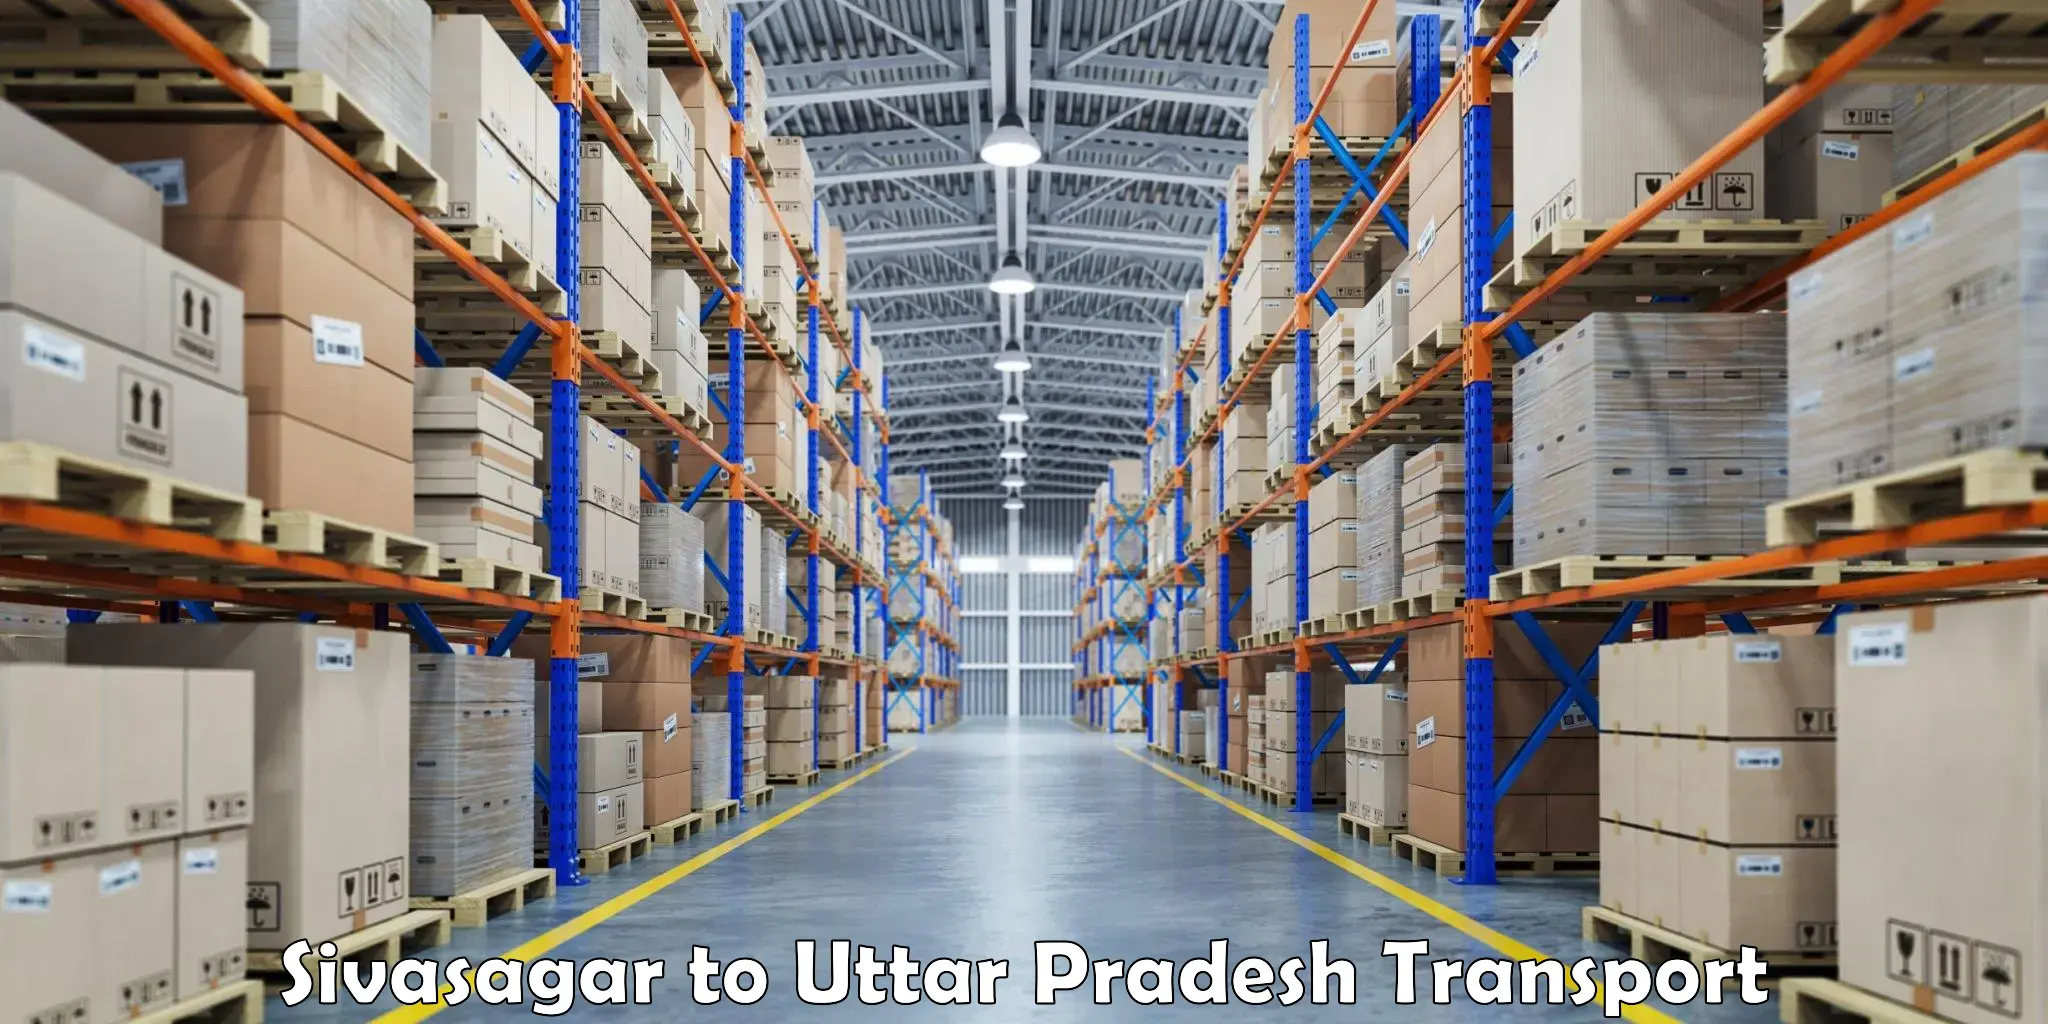 Daily parcel service transport Sivasagar to Uttar Pradesh